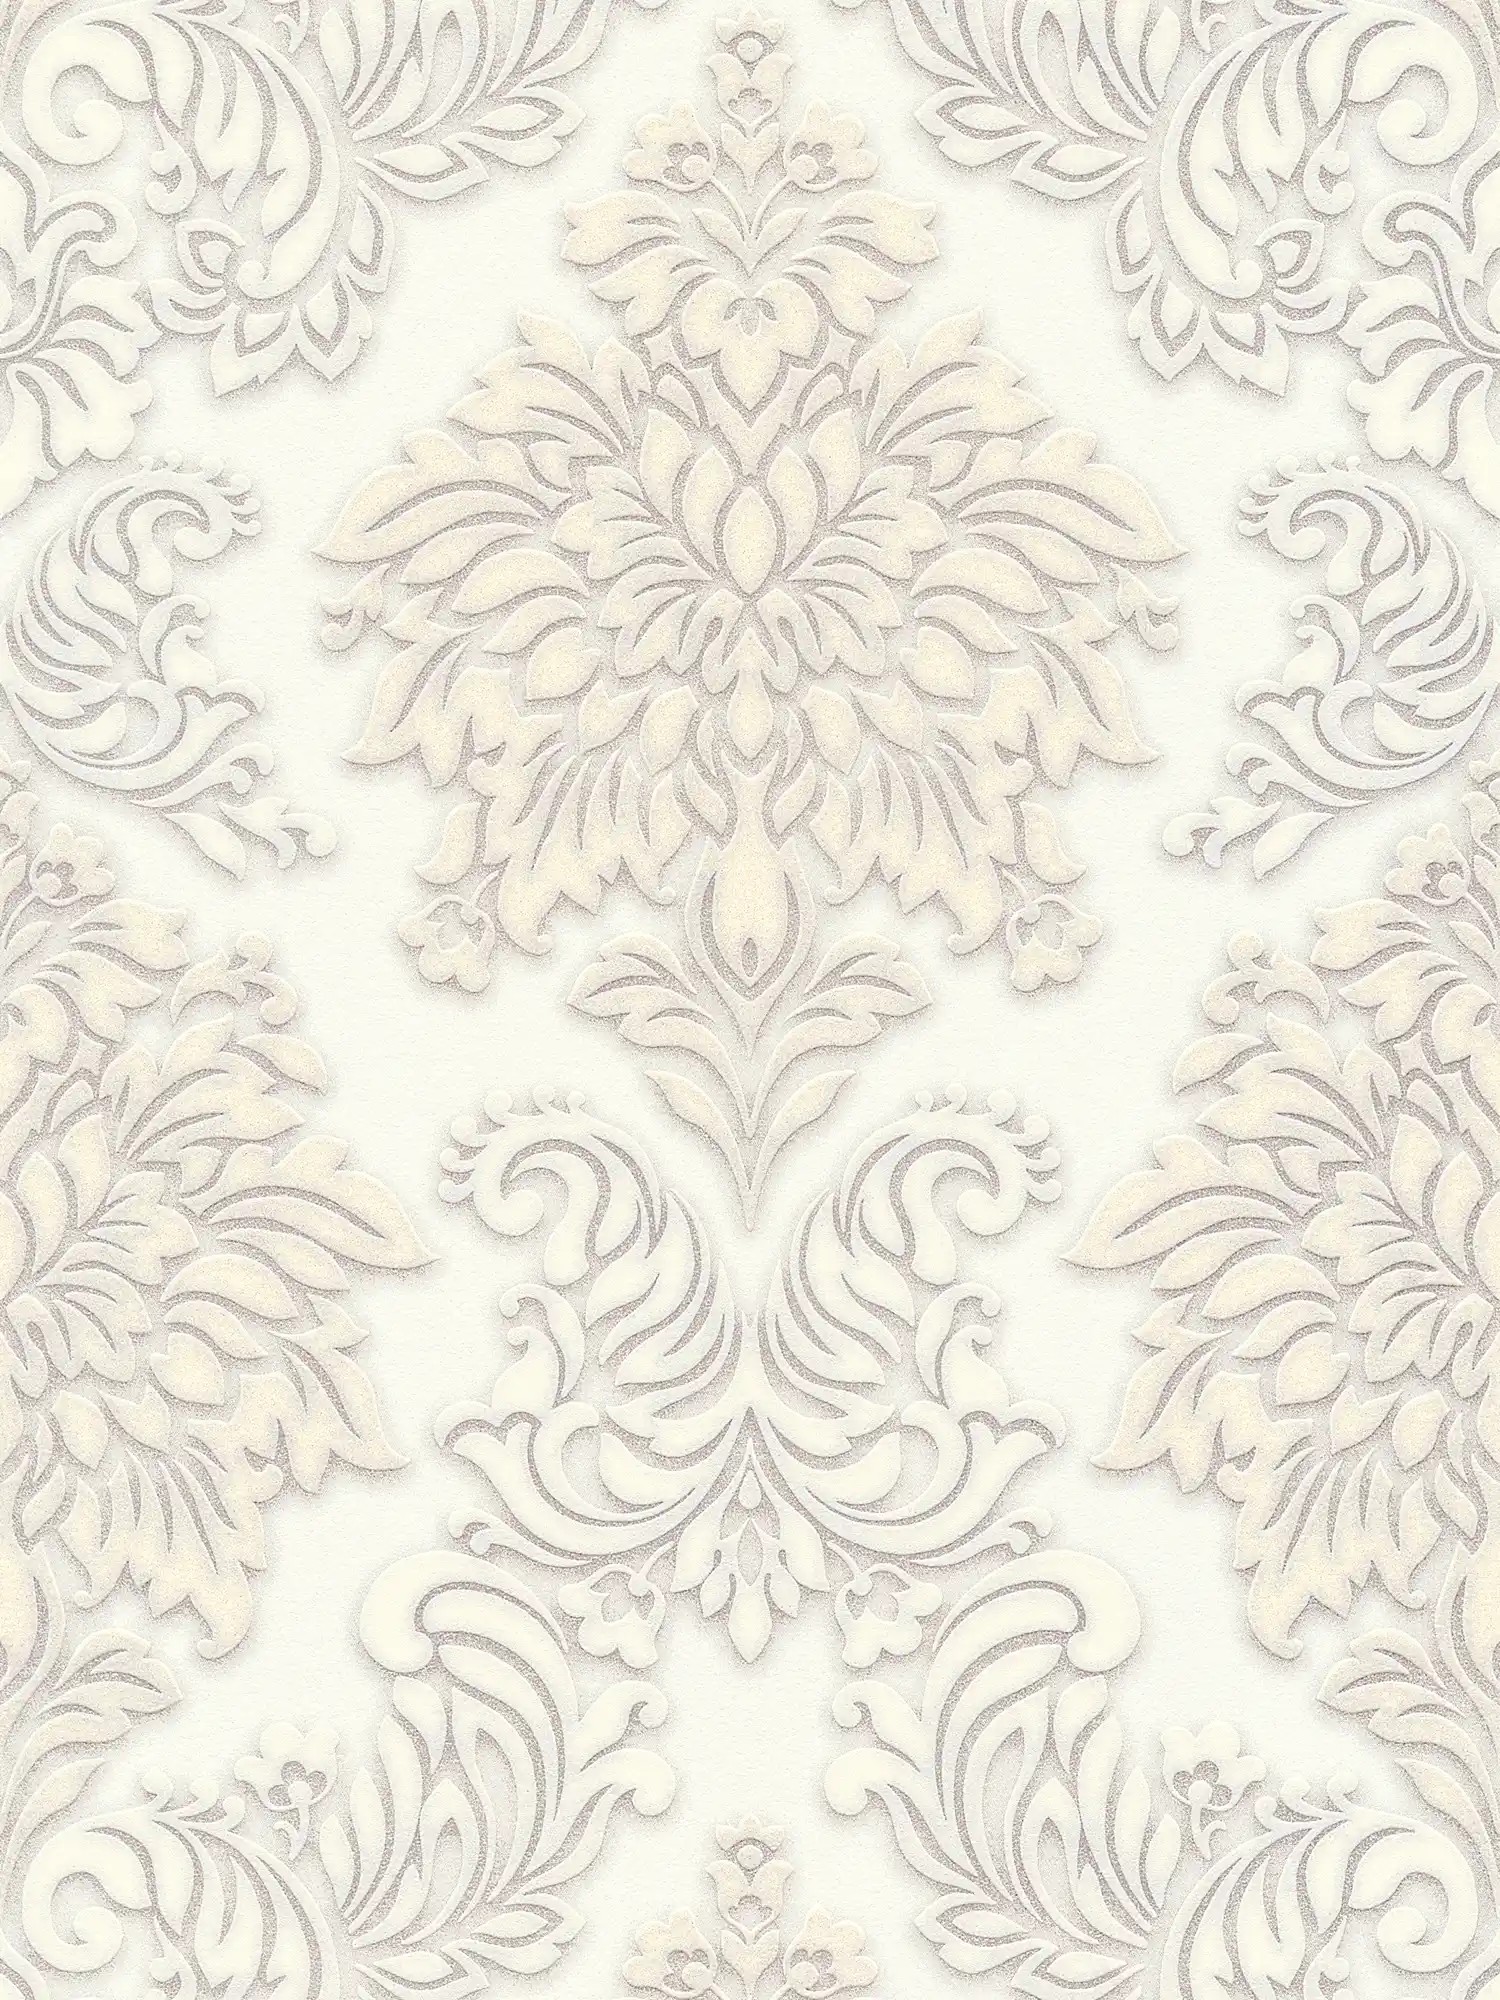 Papier peint baroque Ornements avec effet scintillant - blanc, argent, beige
